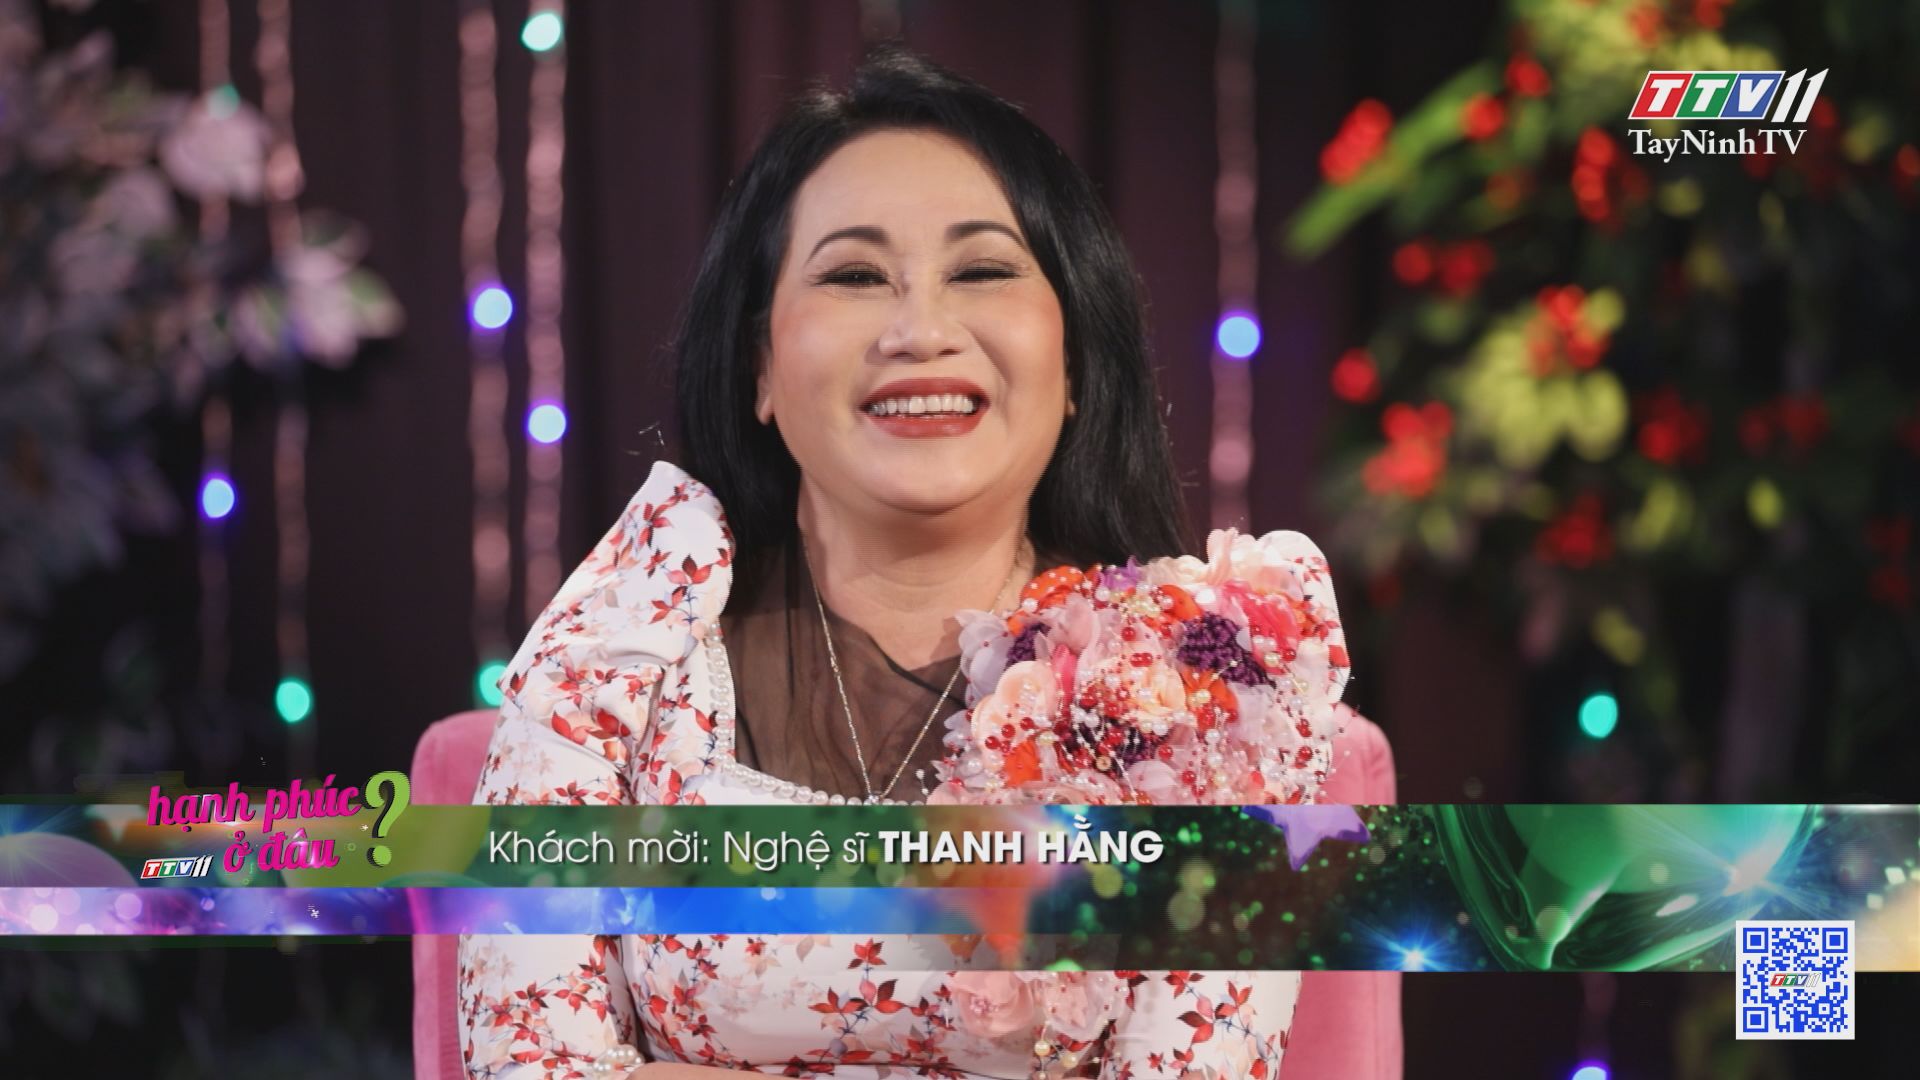 Nghệ sĩ Thanh Hằng nguyện hát đến hơi thở sau cùng | HẠNH PHÚC Ở ĐÂU? | TayNinhTV